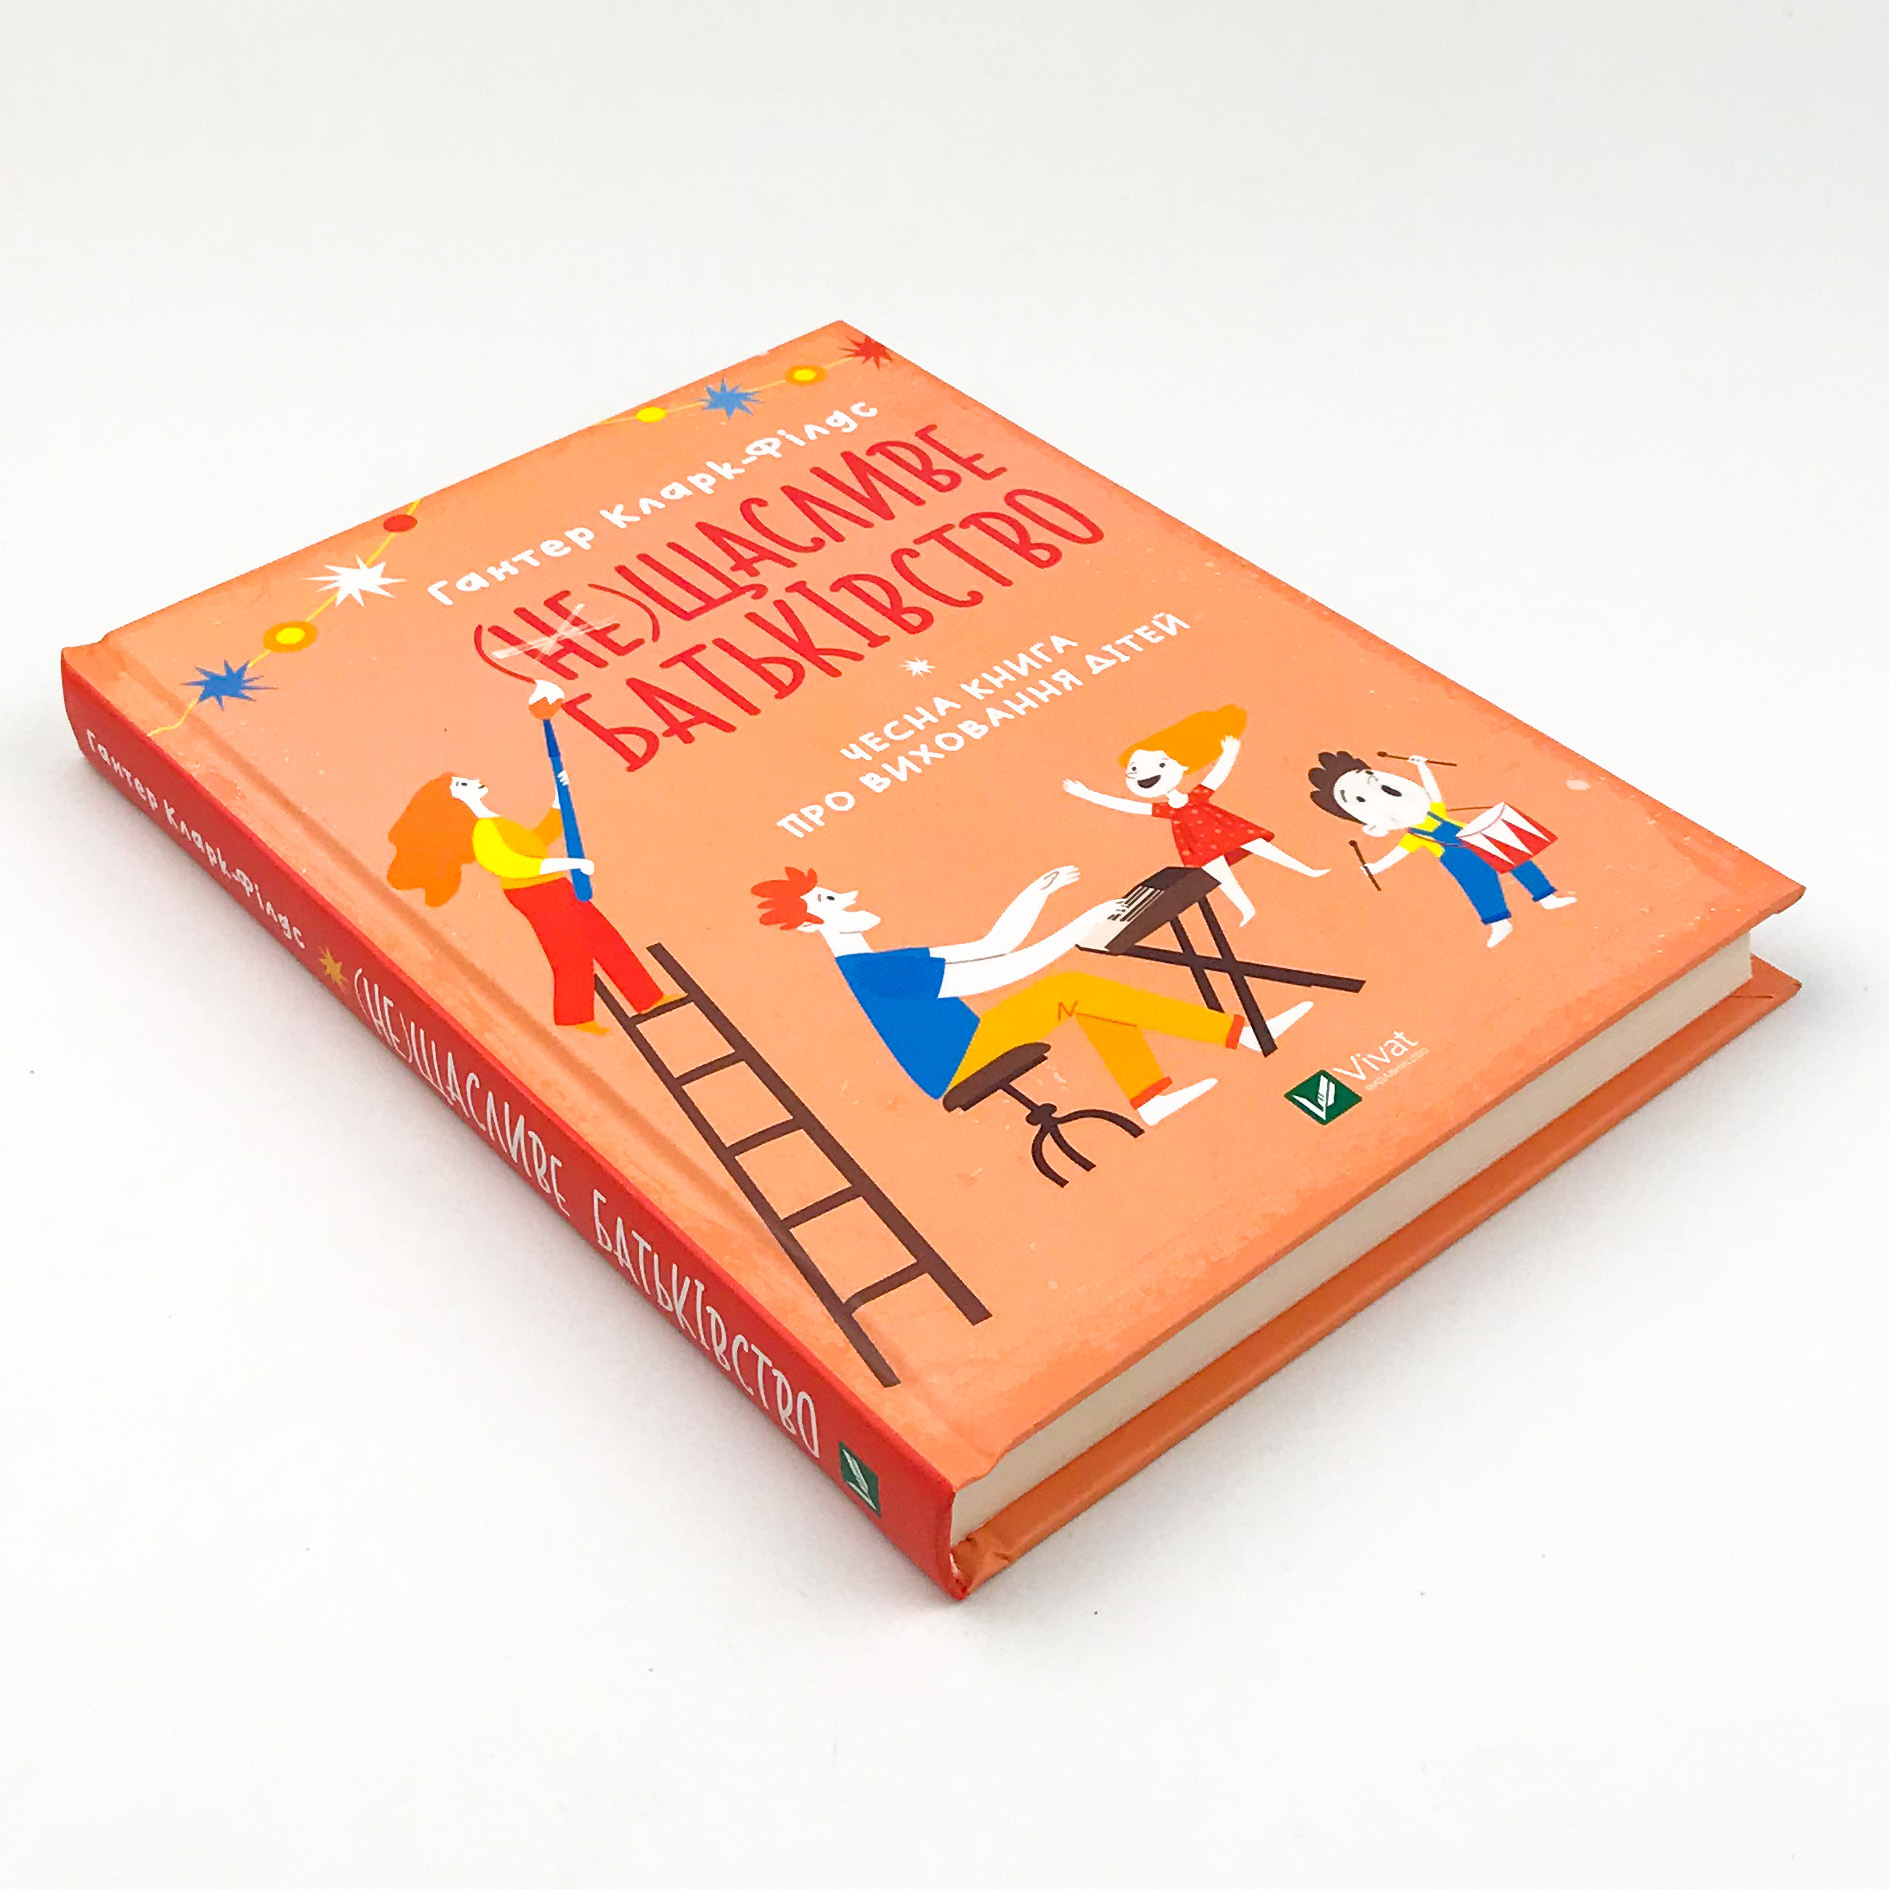 (не)Щасливе батьківство. Чесна книга про виховання дітей. Автор — Гантер Кларк-Філдіс. 